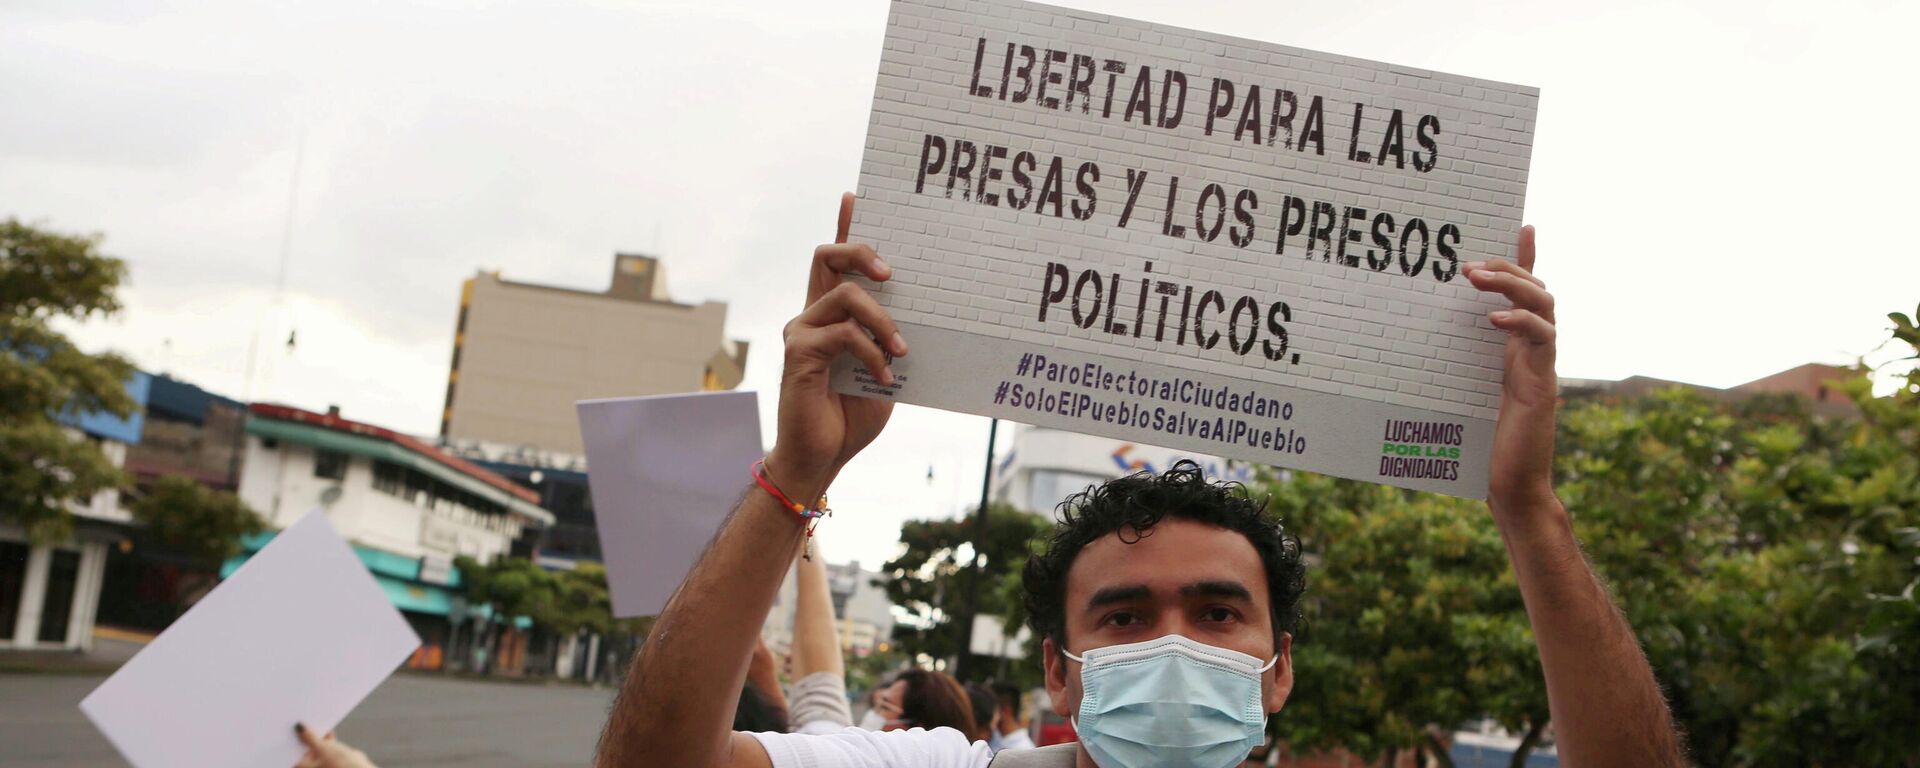 Manifestación en Costa Rica en apoyo de los opositores nicaragüenses detenidos - Sputnik Mundo, 1920, 06.11.2021